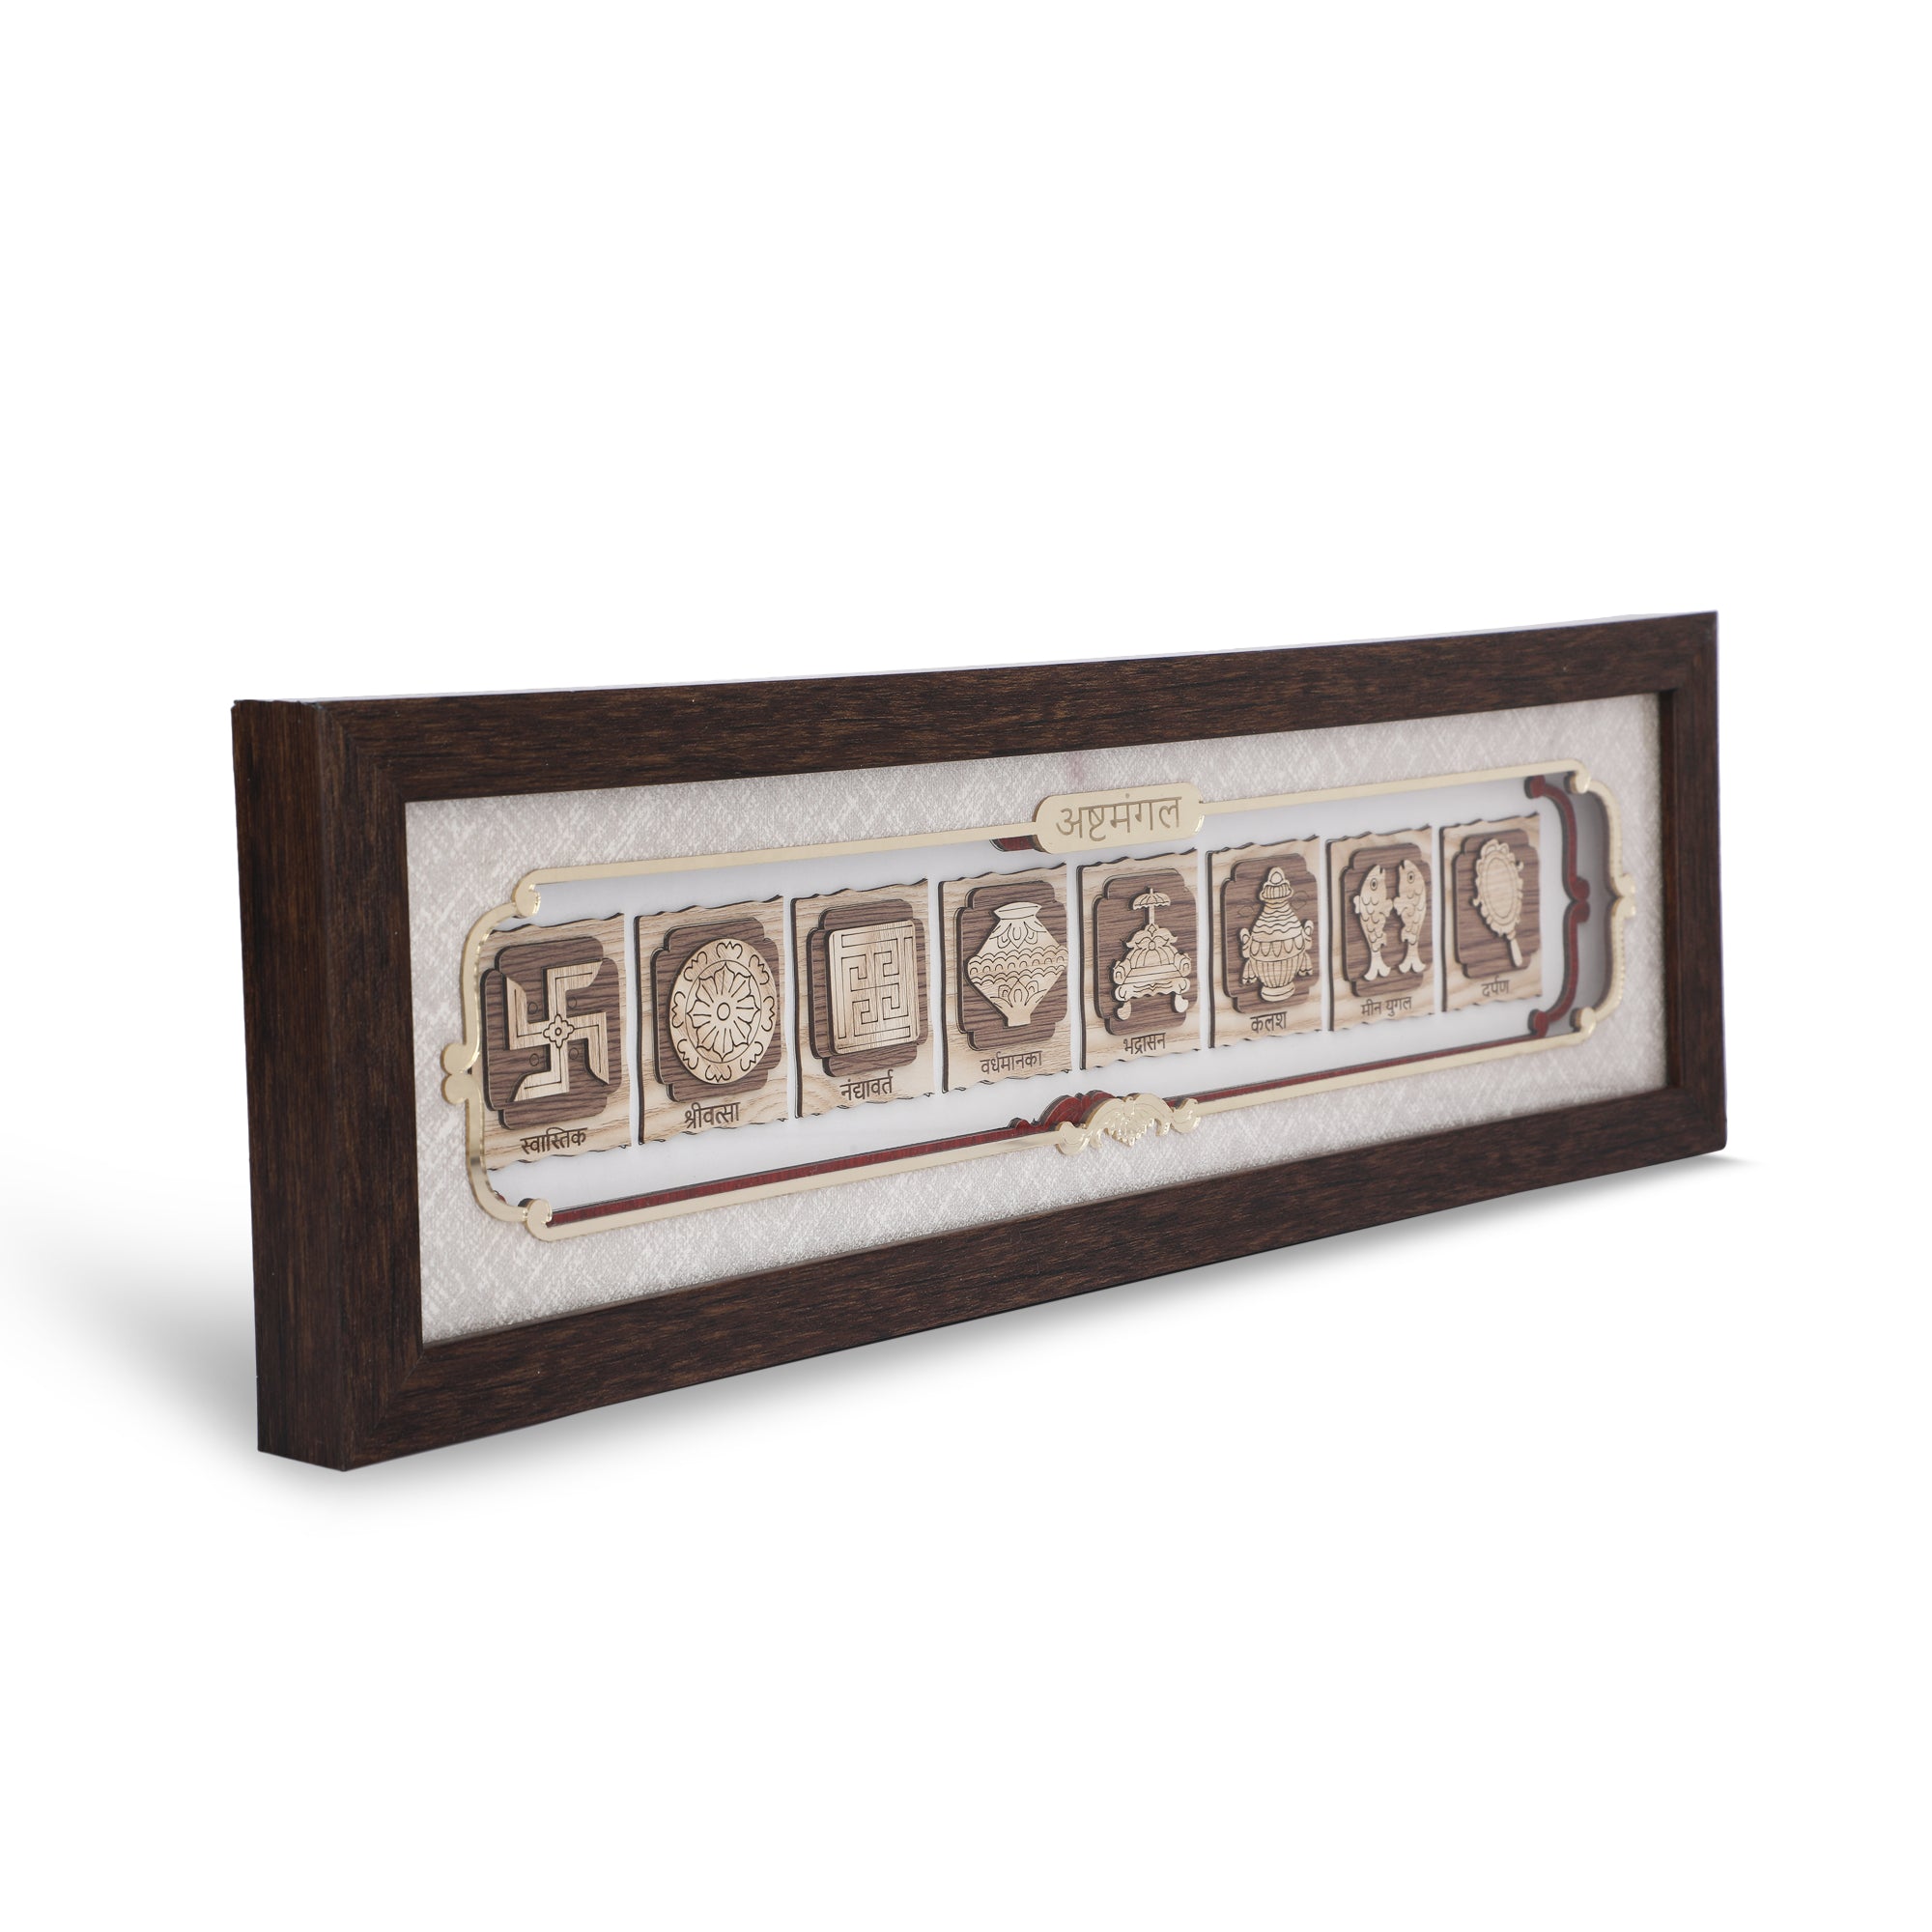 Ashtamangal - 3d Wooden Layer Frame